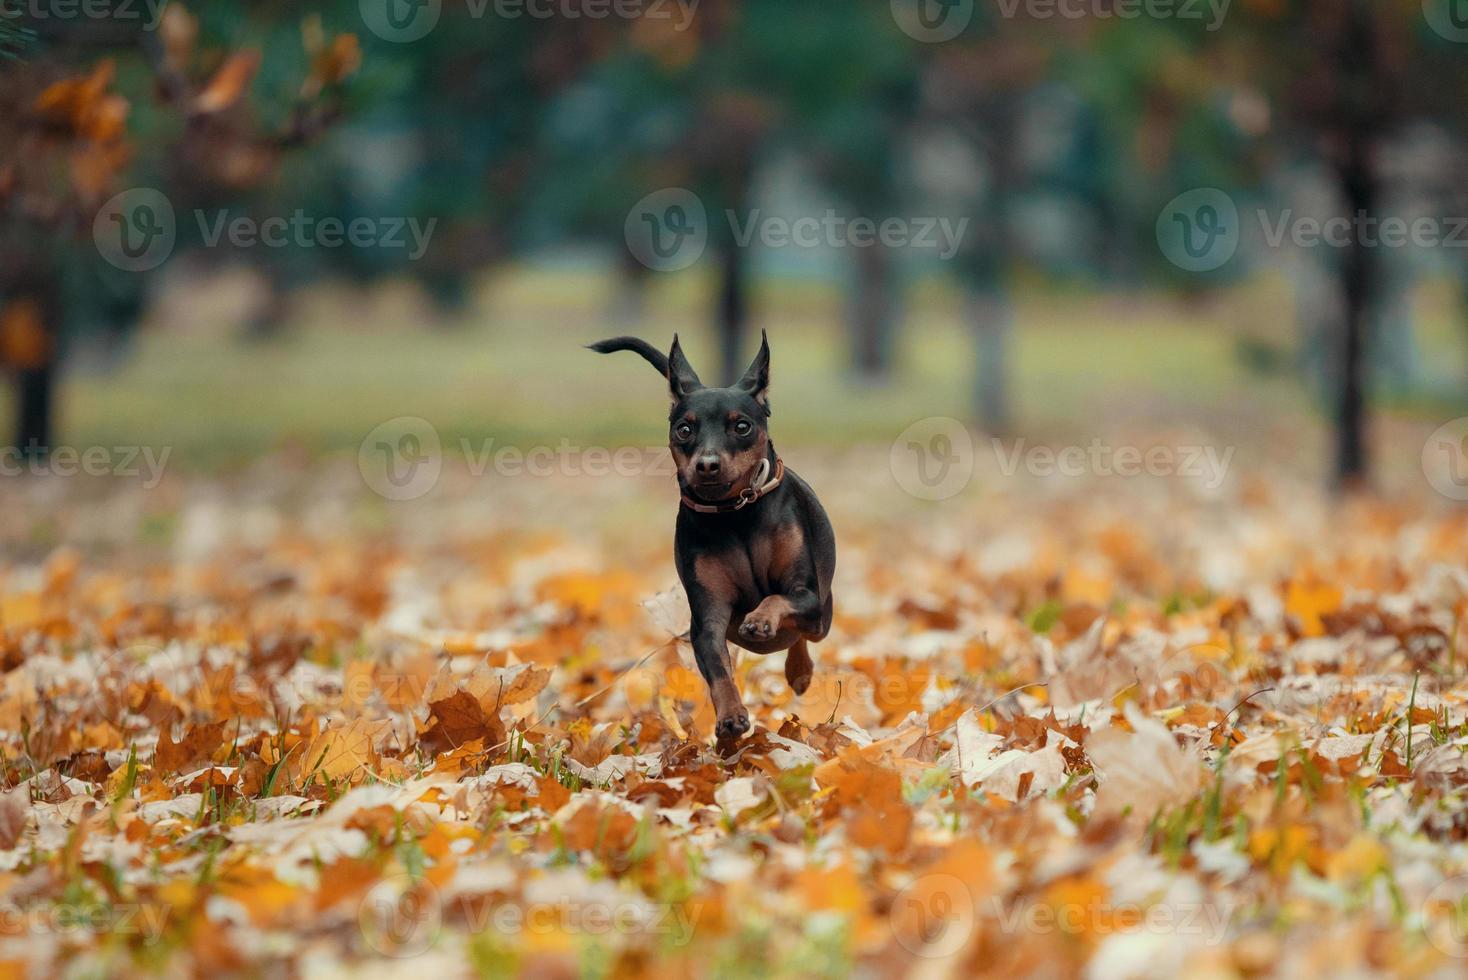 pequeno cão pinscher corre no parque sem pessoas foto